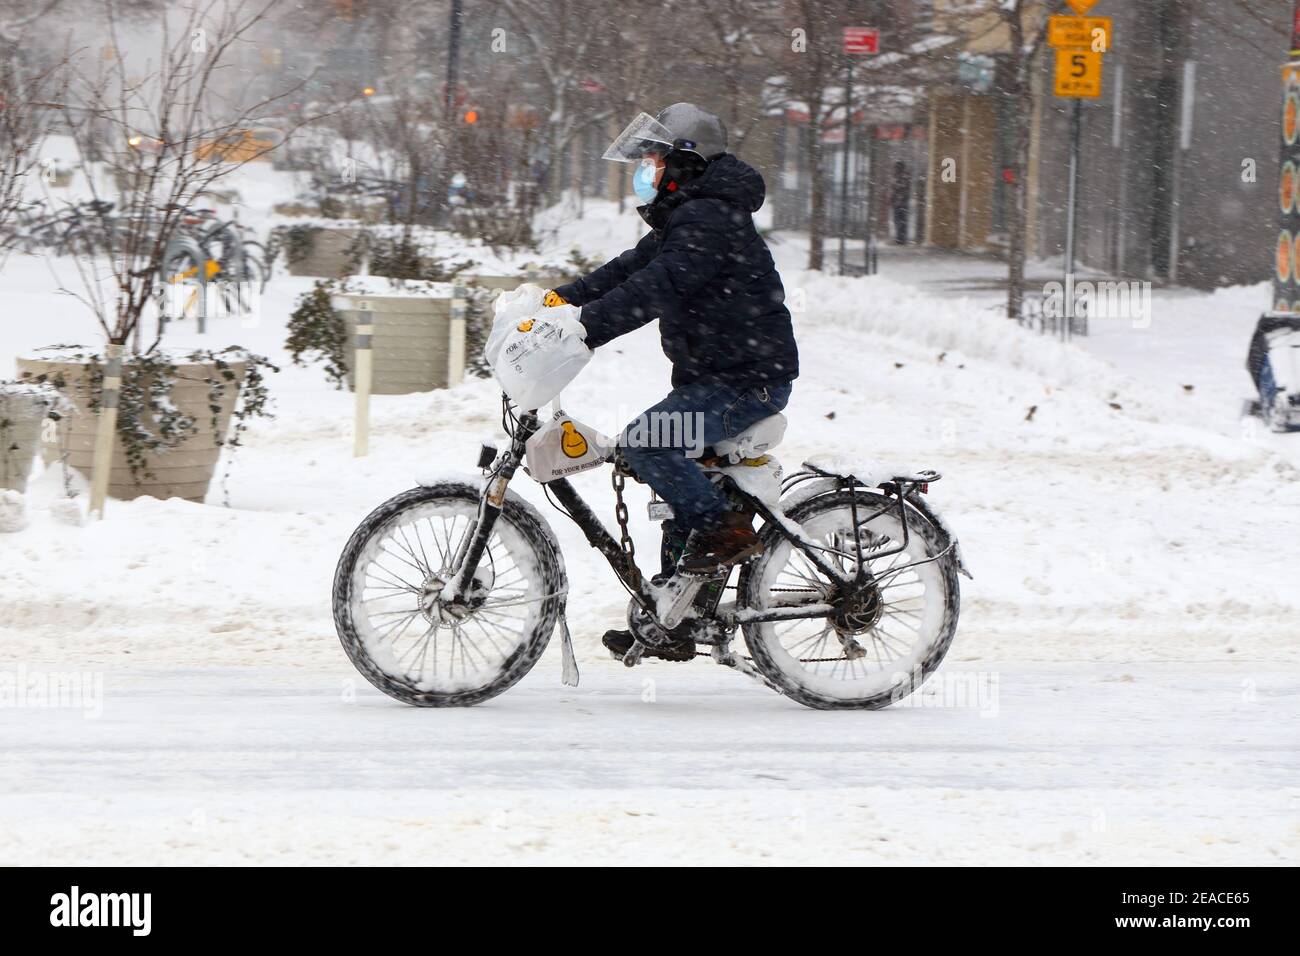 Eine Person, die bei schneebedecktem Wetter mit dem eBike unterwegs ist. New York, NY Stockfoto